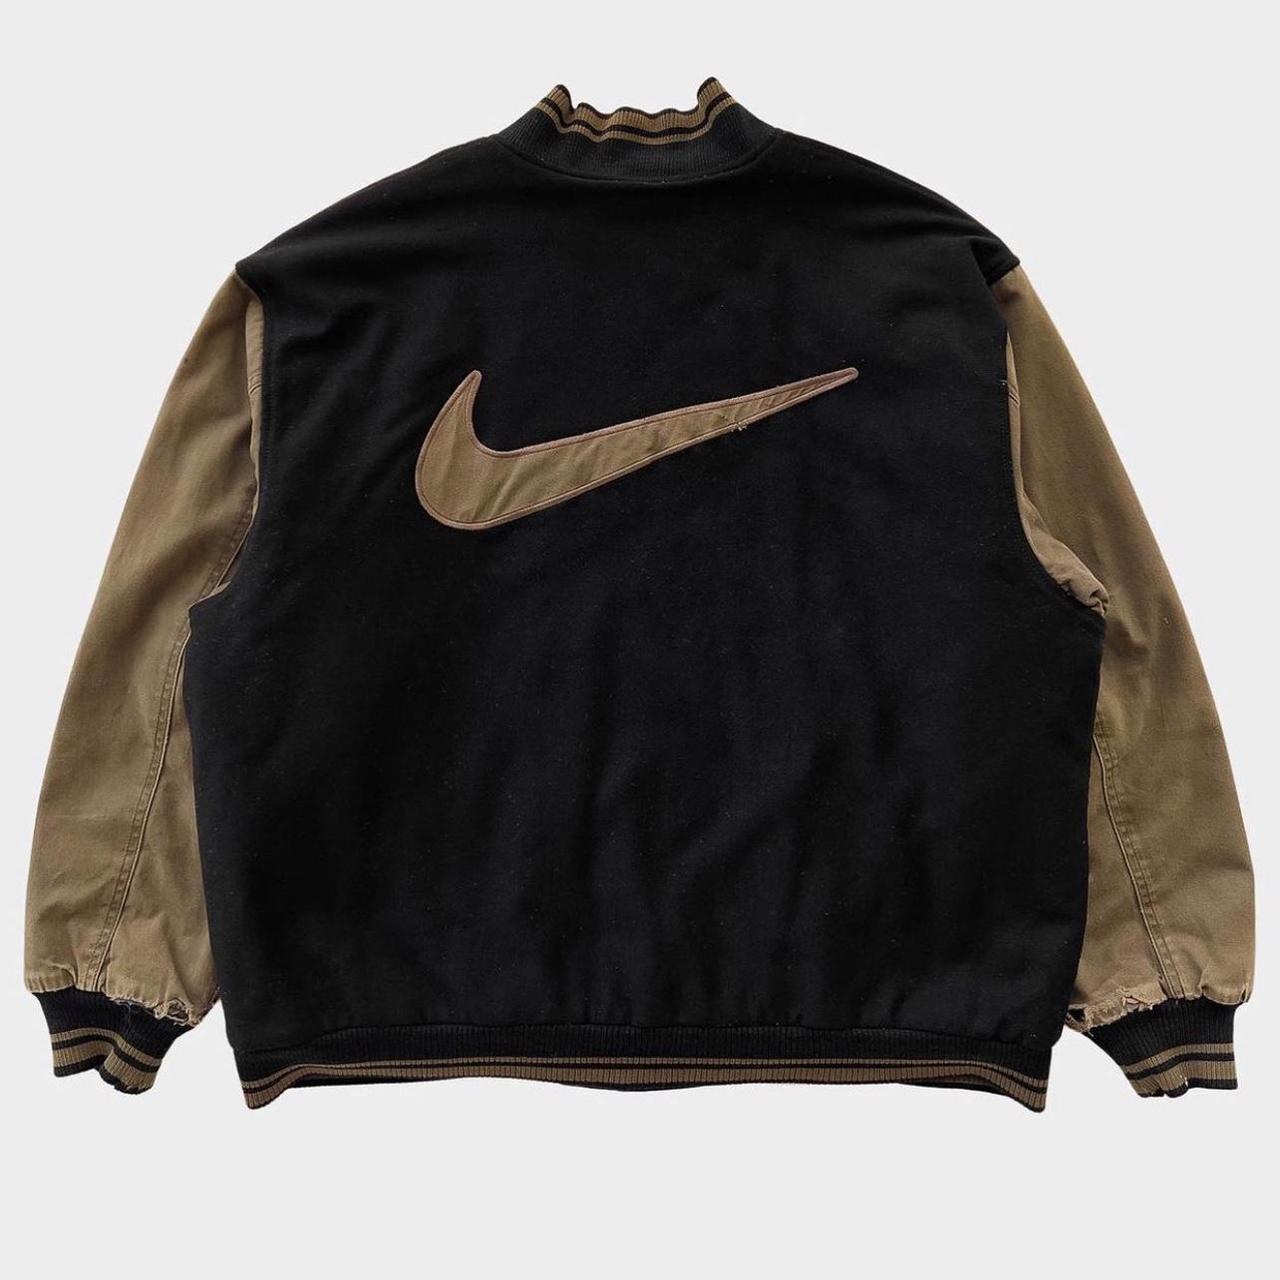 Nike Men's Black and Brown Jacket | Depop